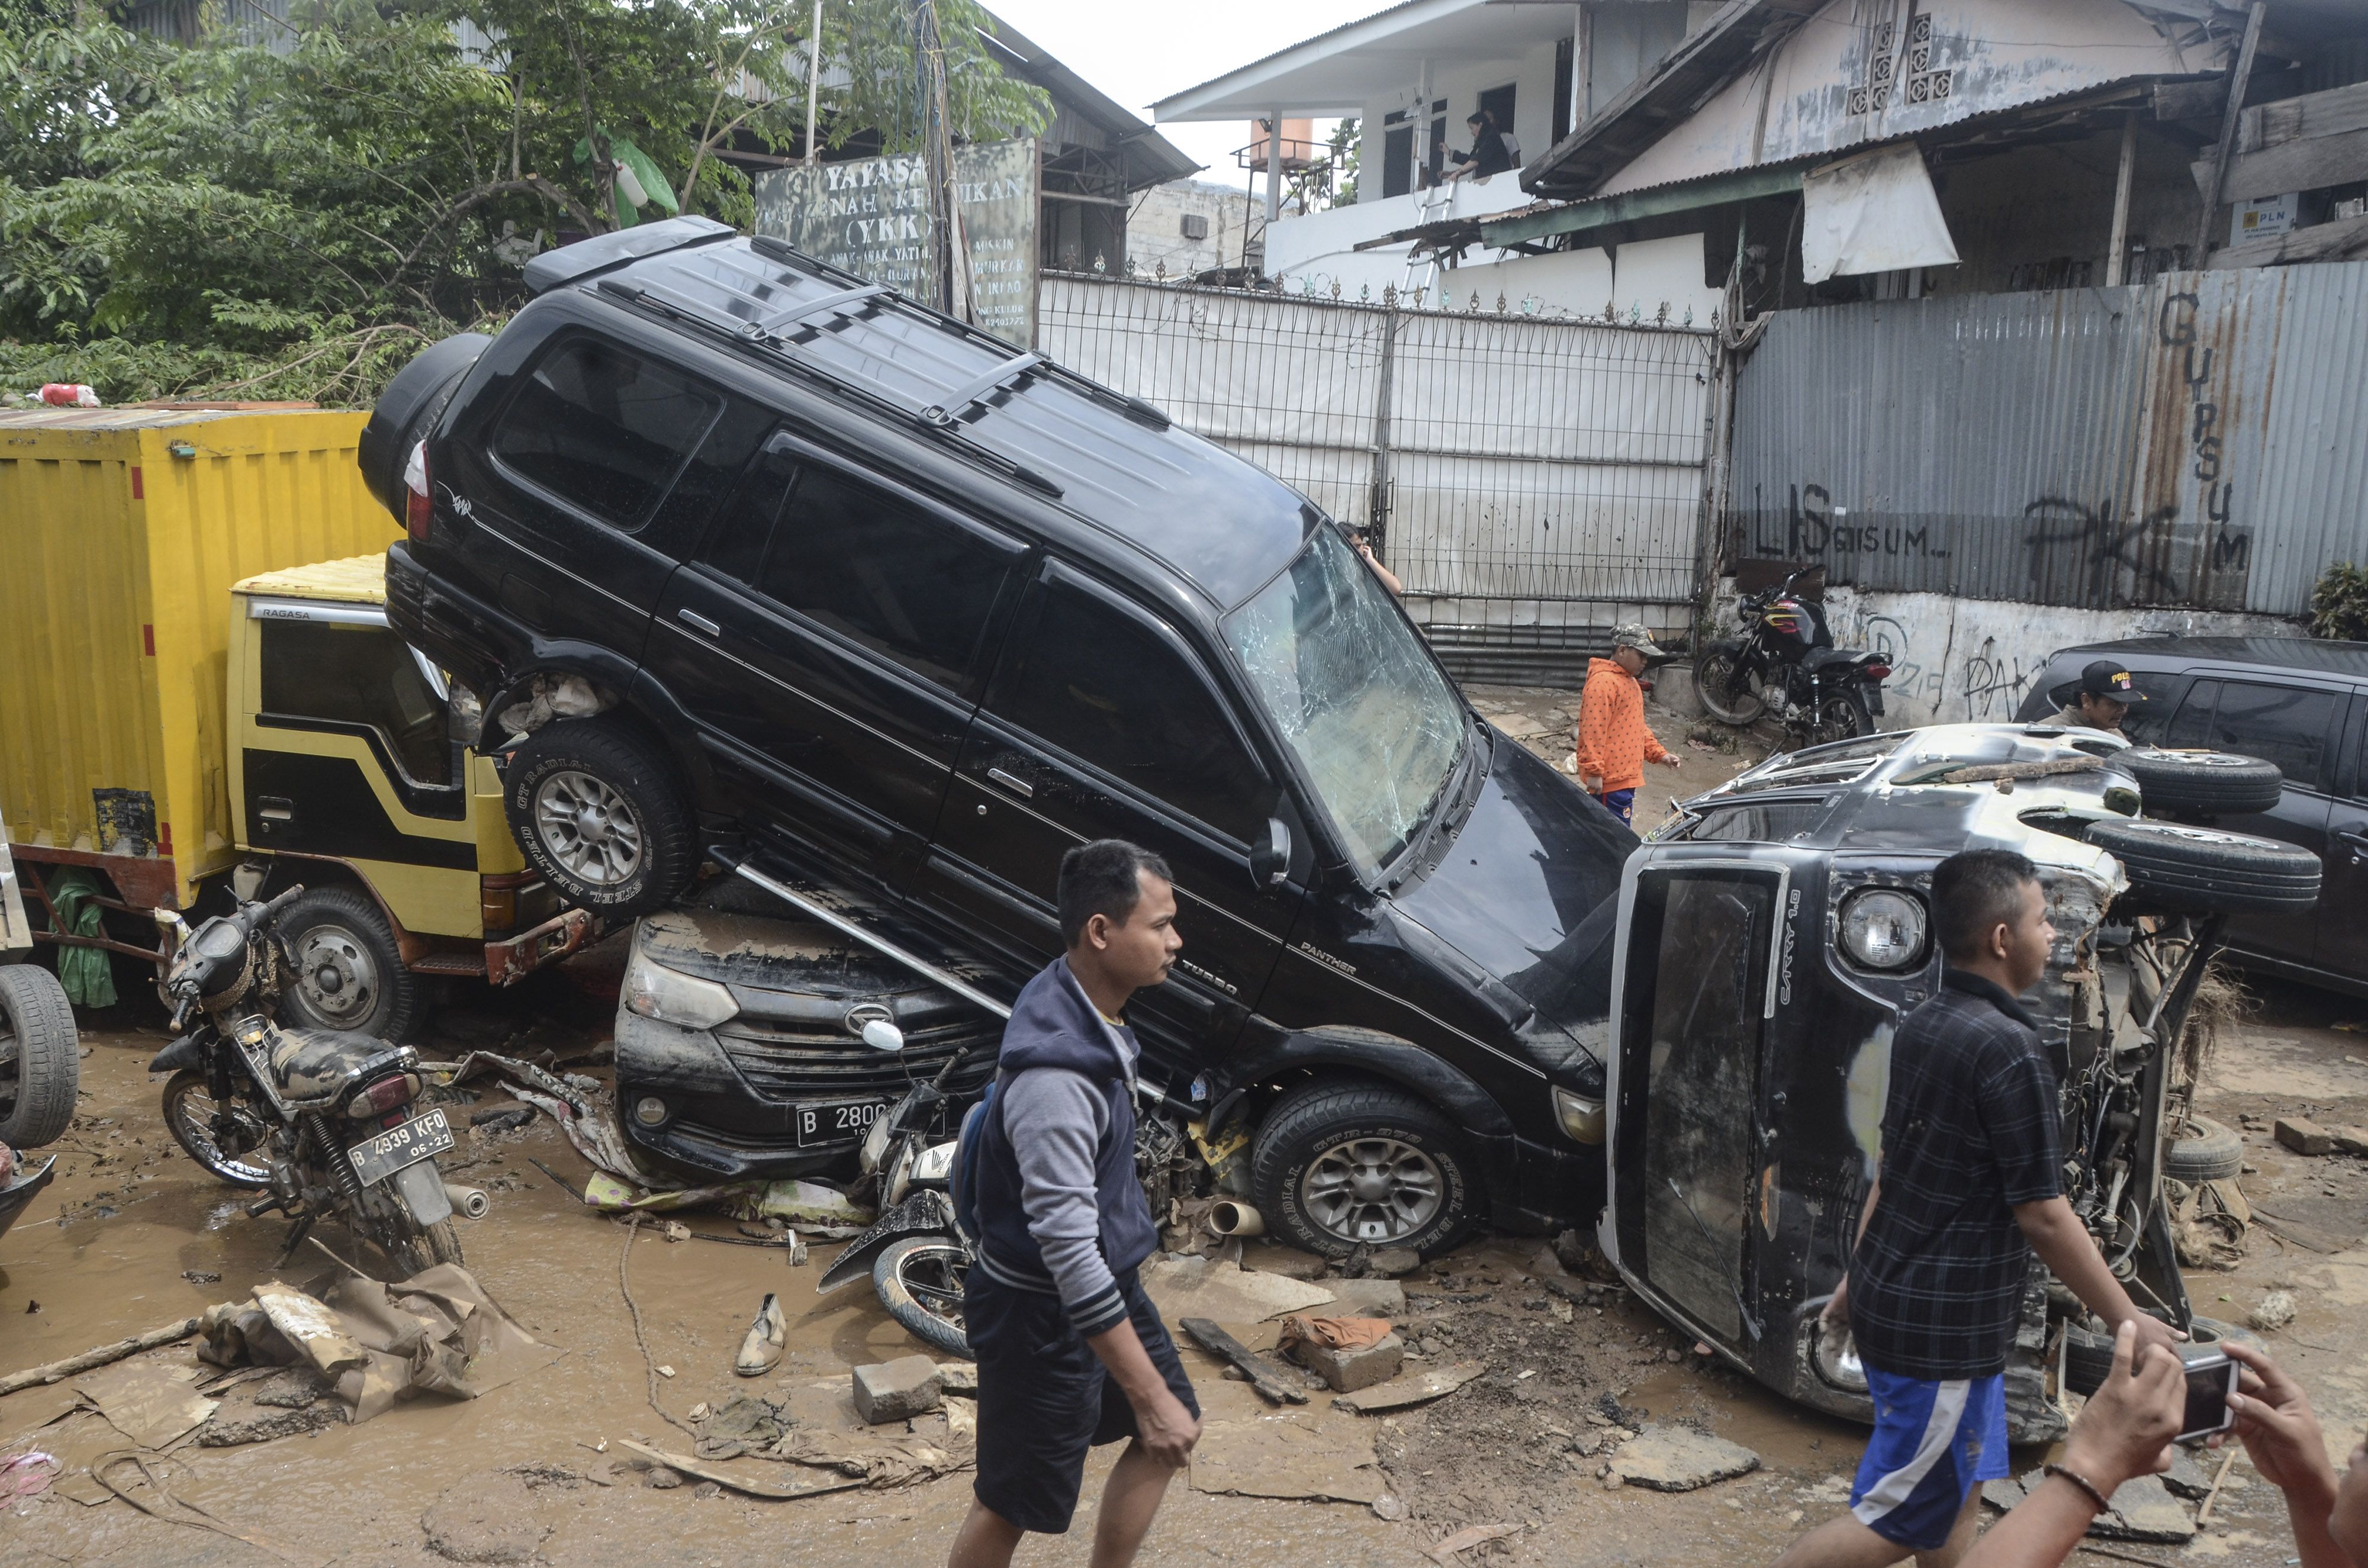 Sejumlah warga berjalan di dekat mobil yang rusak pascabanjir di Perumahan Pondok Gede Permai Bekasi, Jawa Barat, Kamis (2/1/2020). Banjir yang telah menggenangi rumah warga selama dua hari tersebut terjadi akibat luapan Kali Bekasi. ANTARA FOTO/ Fakhri Hermansyah/wsj.